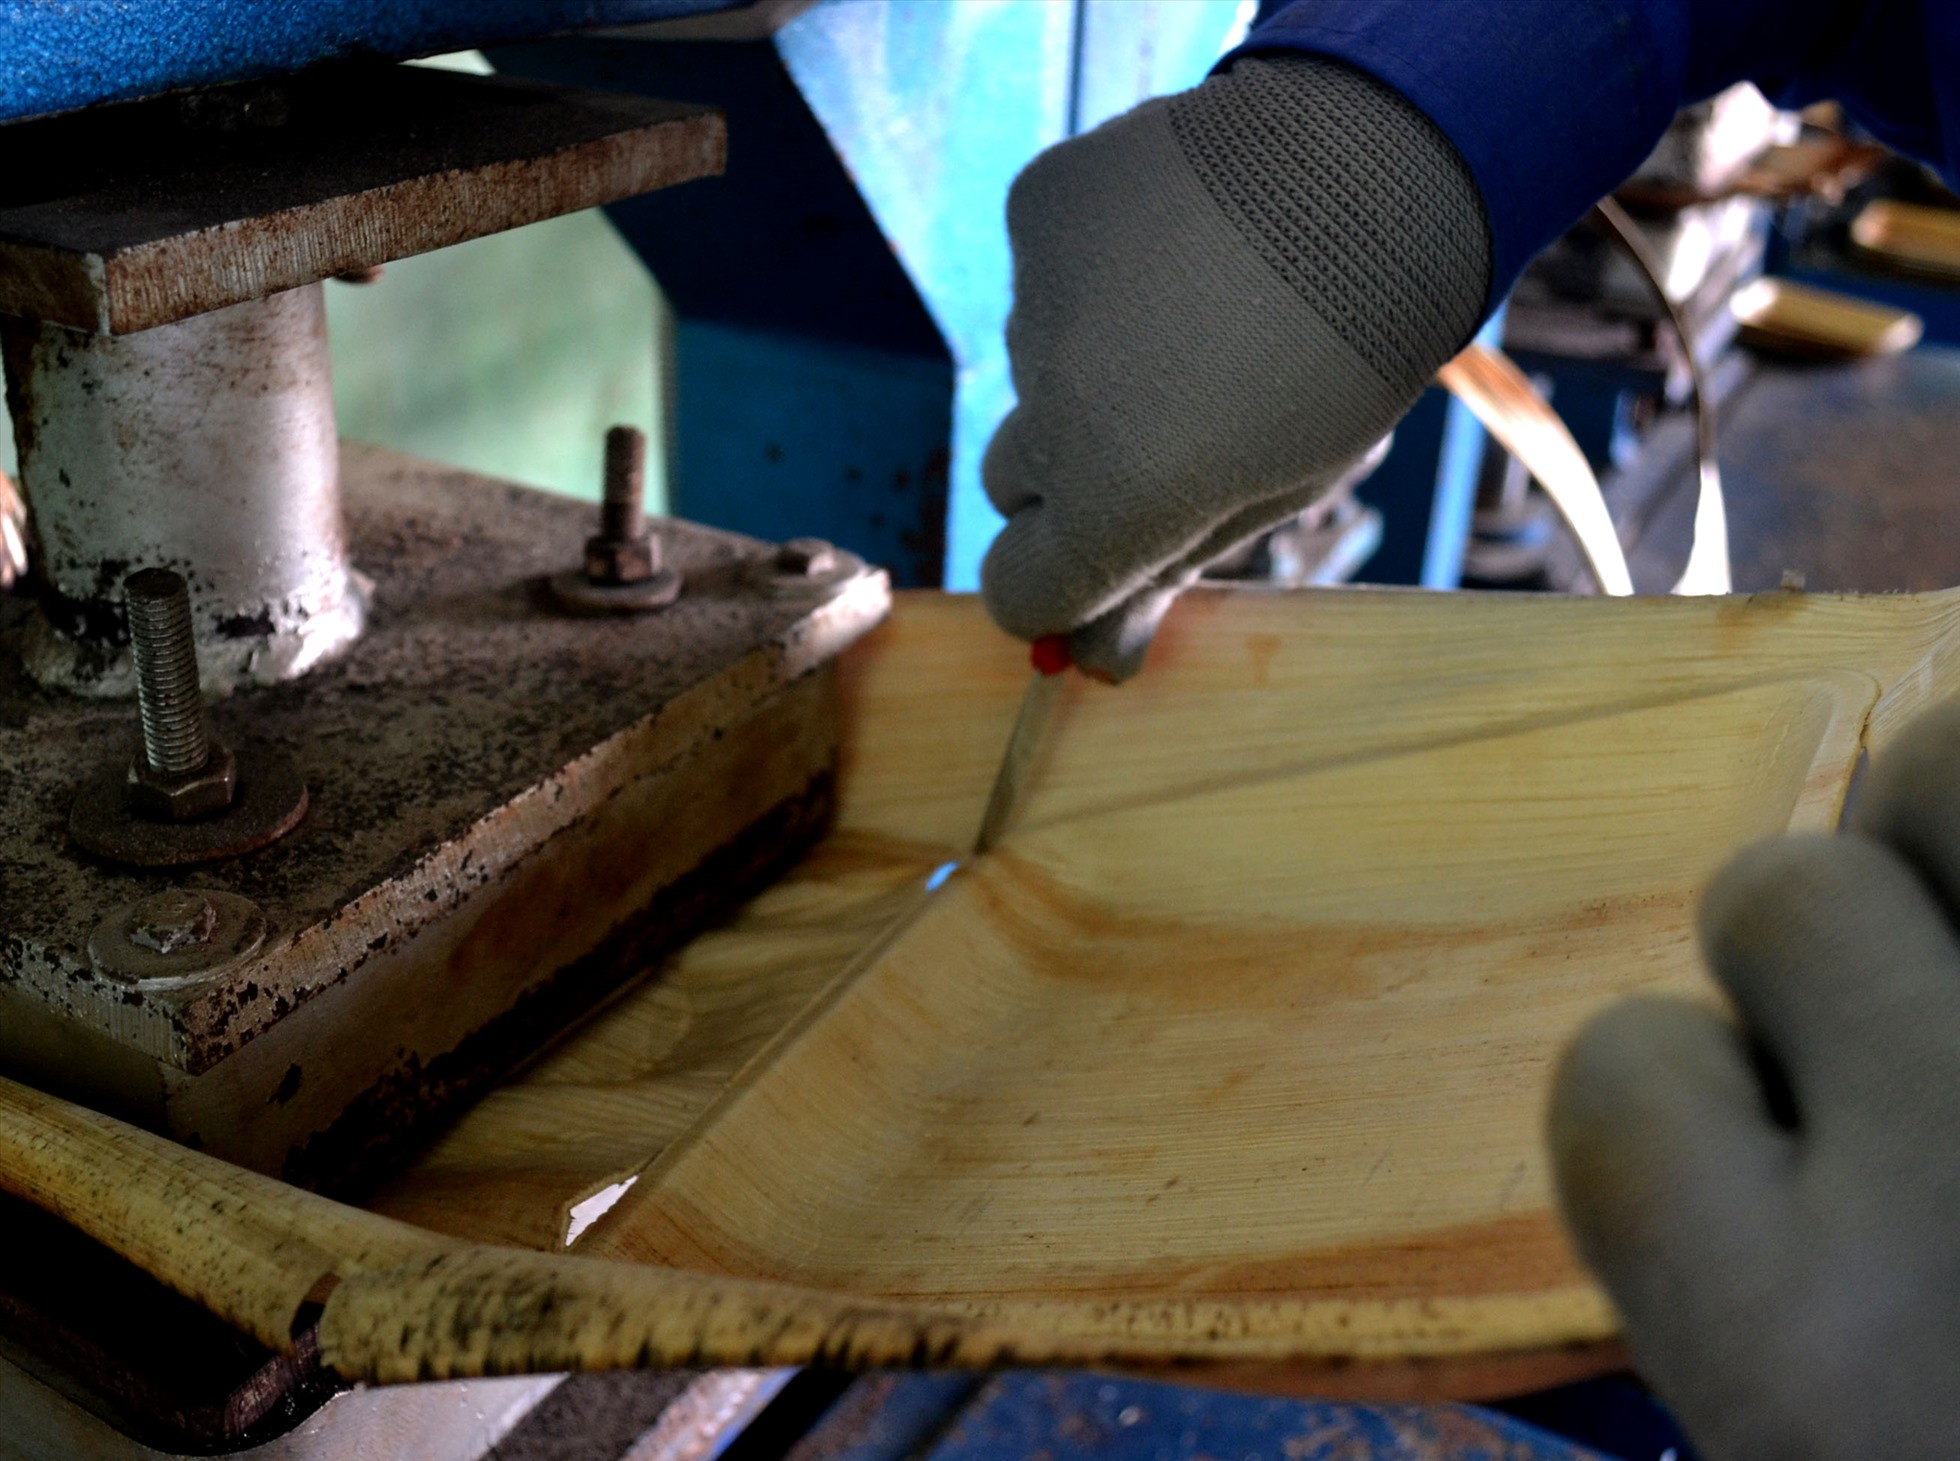 Sau khi ép nhiệt tạo khuôn, người thợ sẽ dùng cao cắt theo đường viền, tạo hình cho sản phẩm